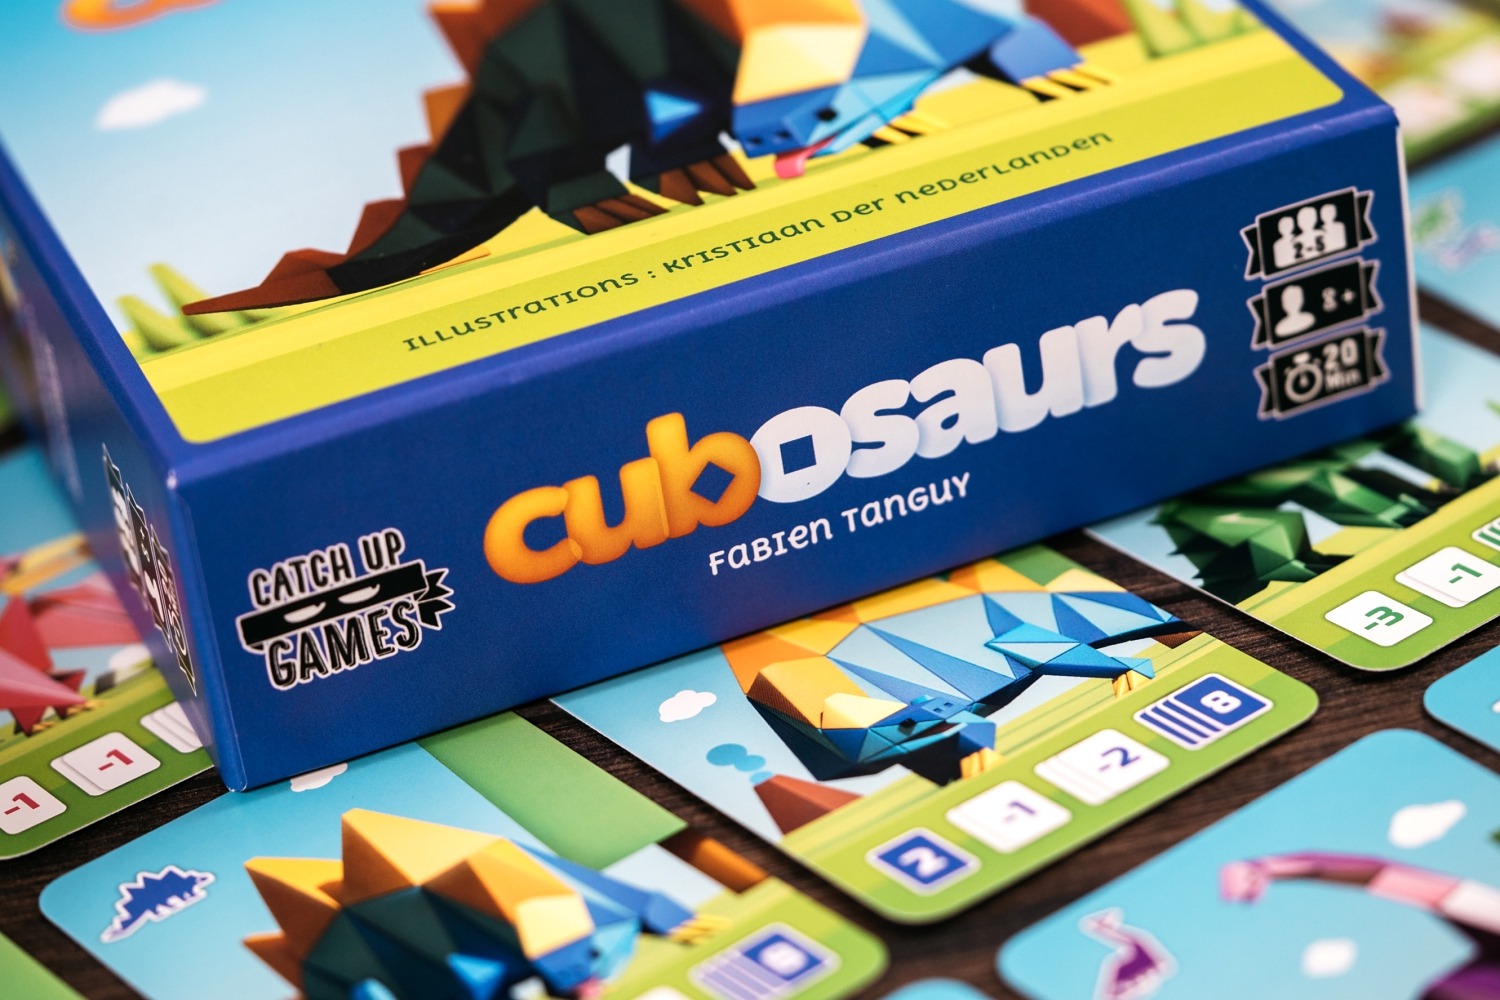 cubosaurs catch up games boardgame jeu de société 